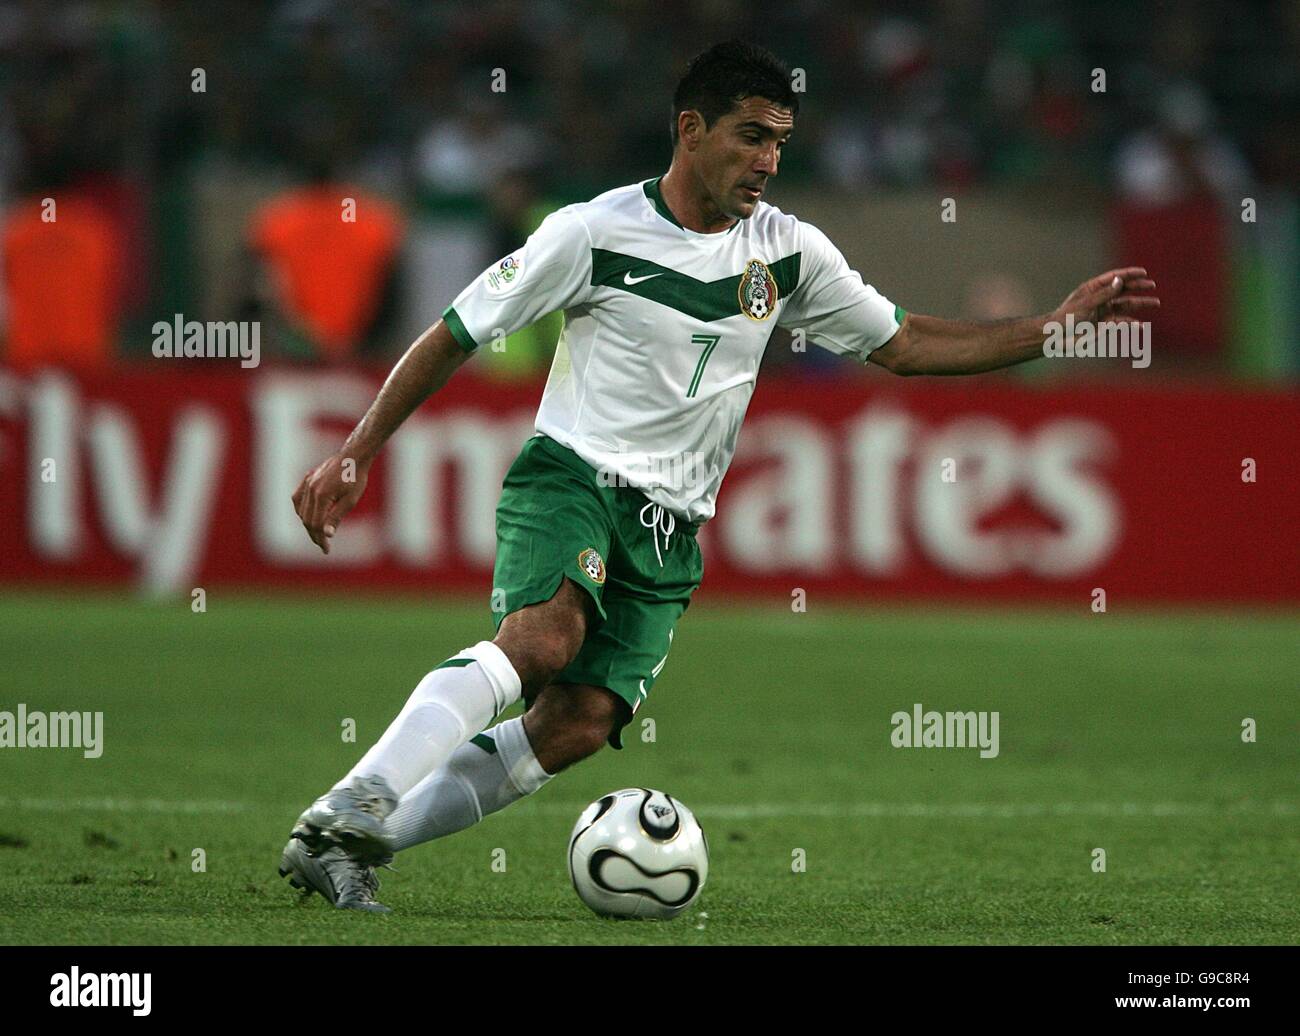 Calcio - Coppa del mondo FIFA 2006 Germania - Gruppo D - Messico / Angola - AWD Arena. Antonio Zinha, Messico Foto Stock